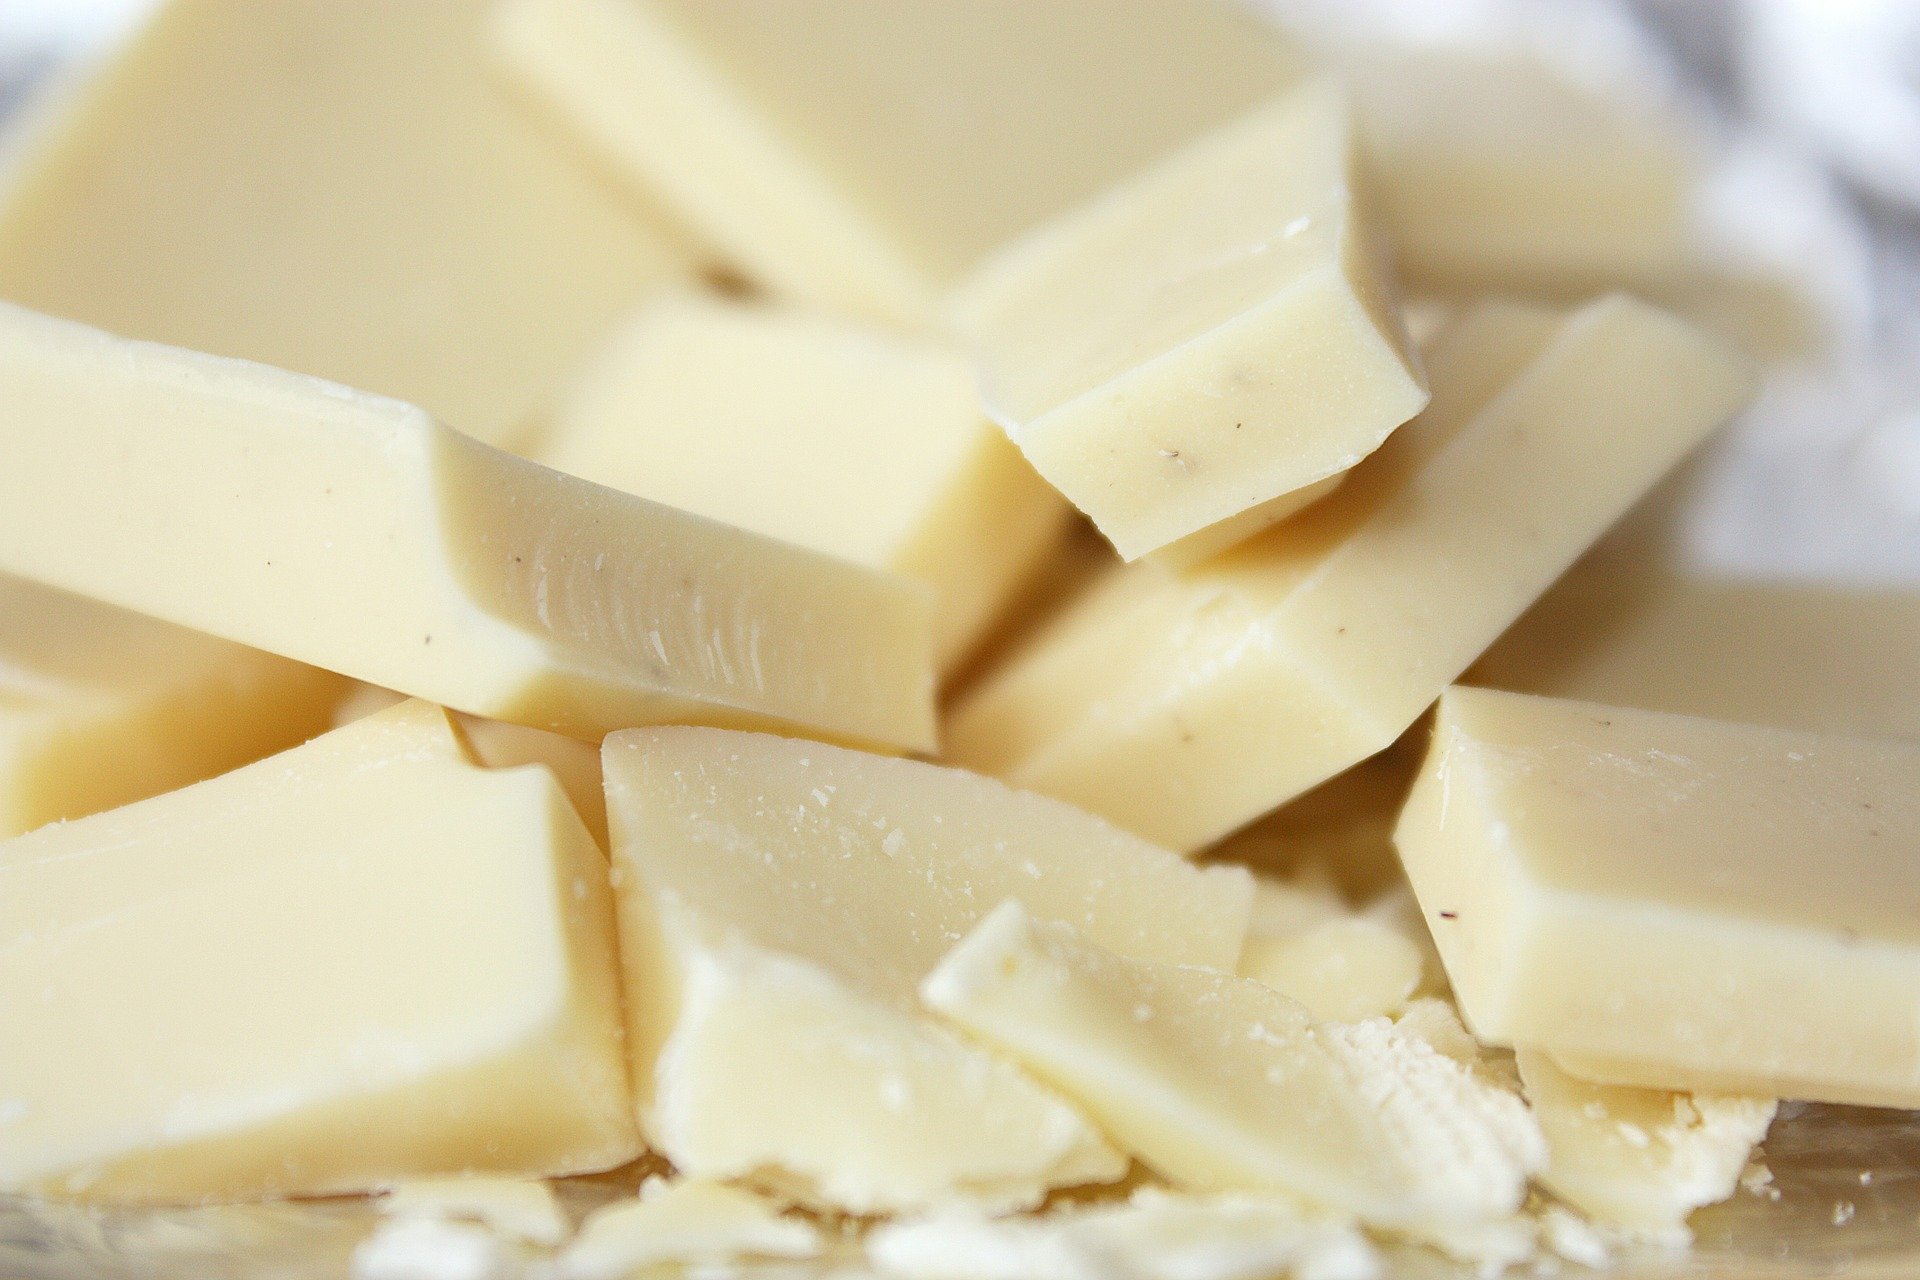 O chocolate branco é inimigo da saúde da pele por ser feito da manteiga do cacau e não da semente do fruto. (Foto: Reprodução/Pixabay)